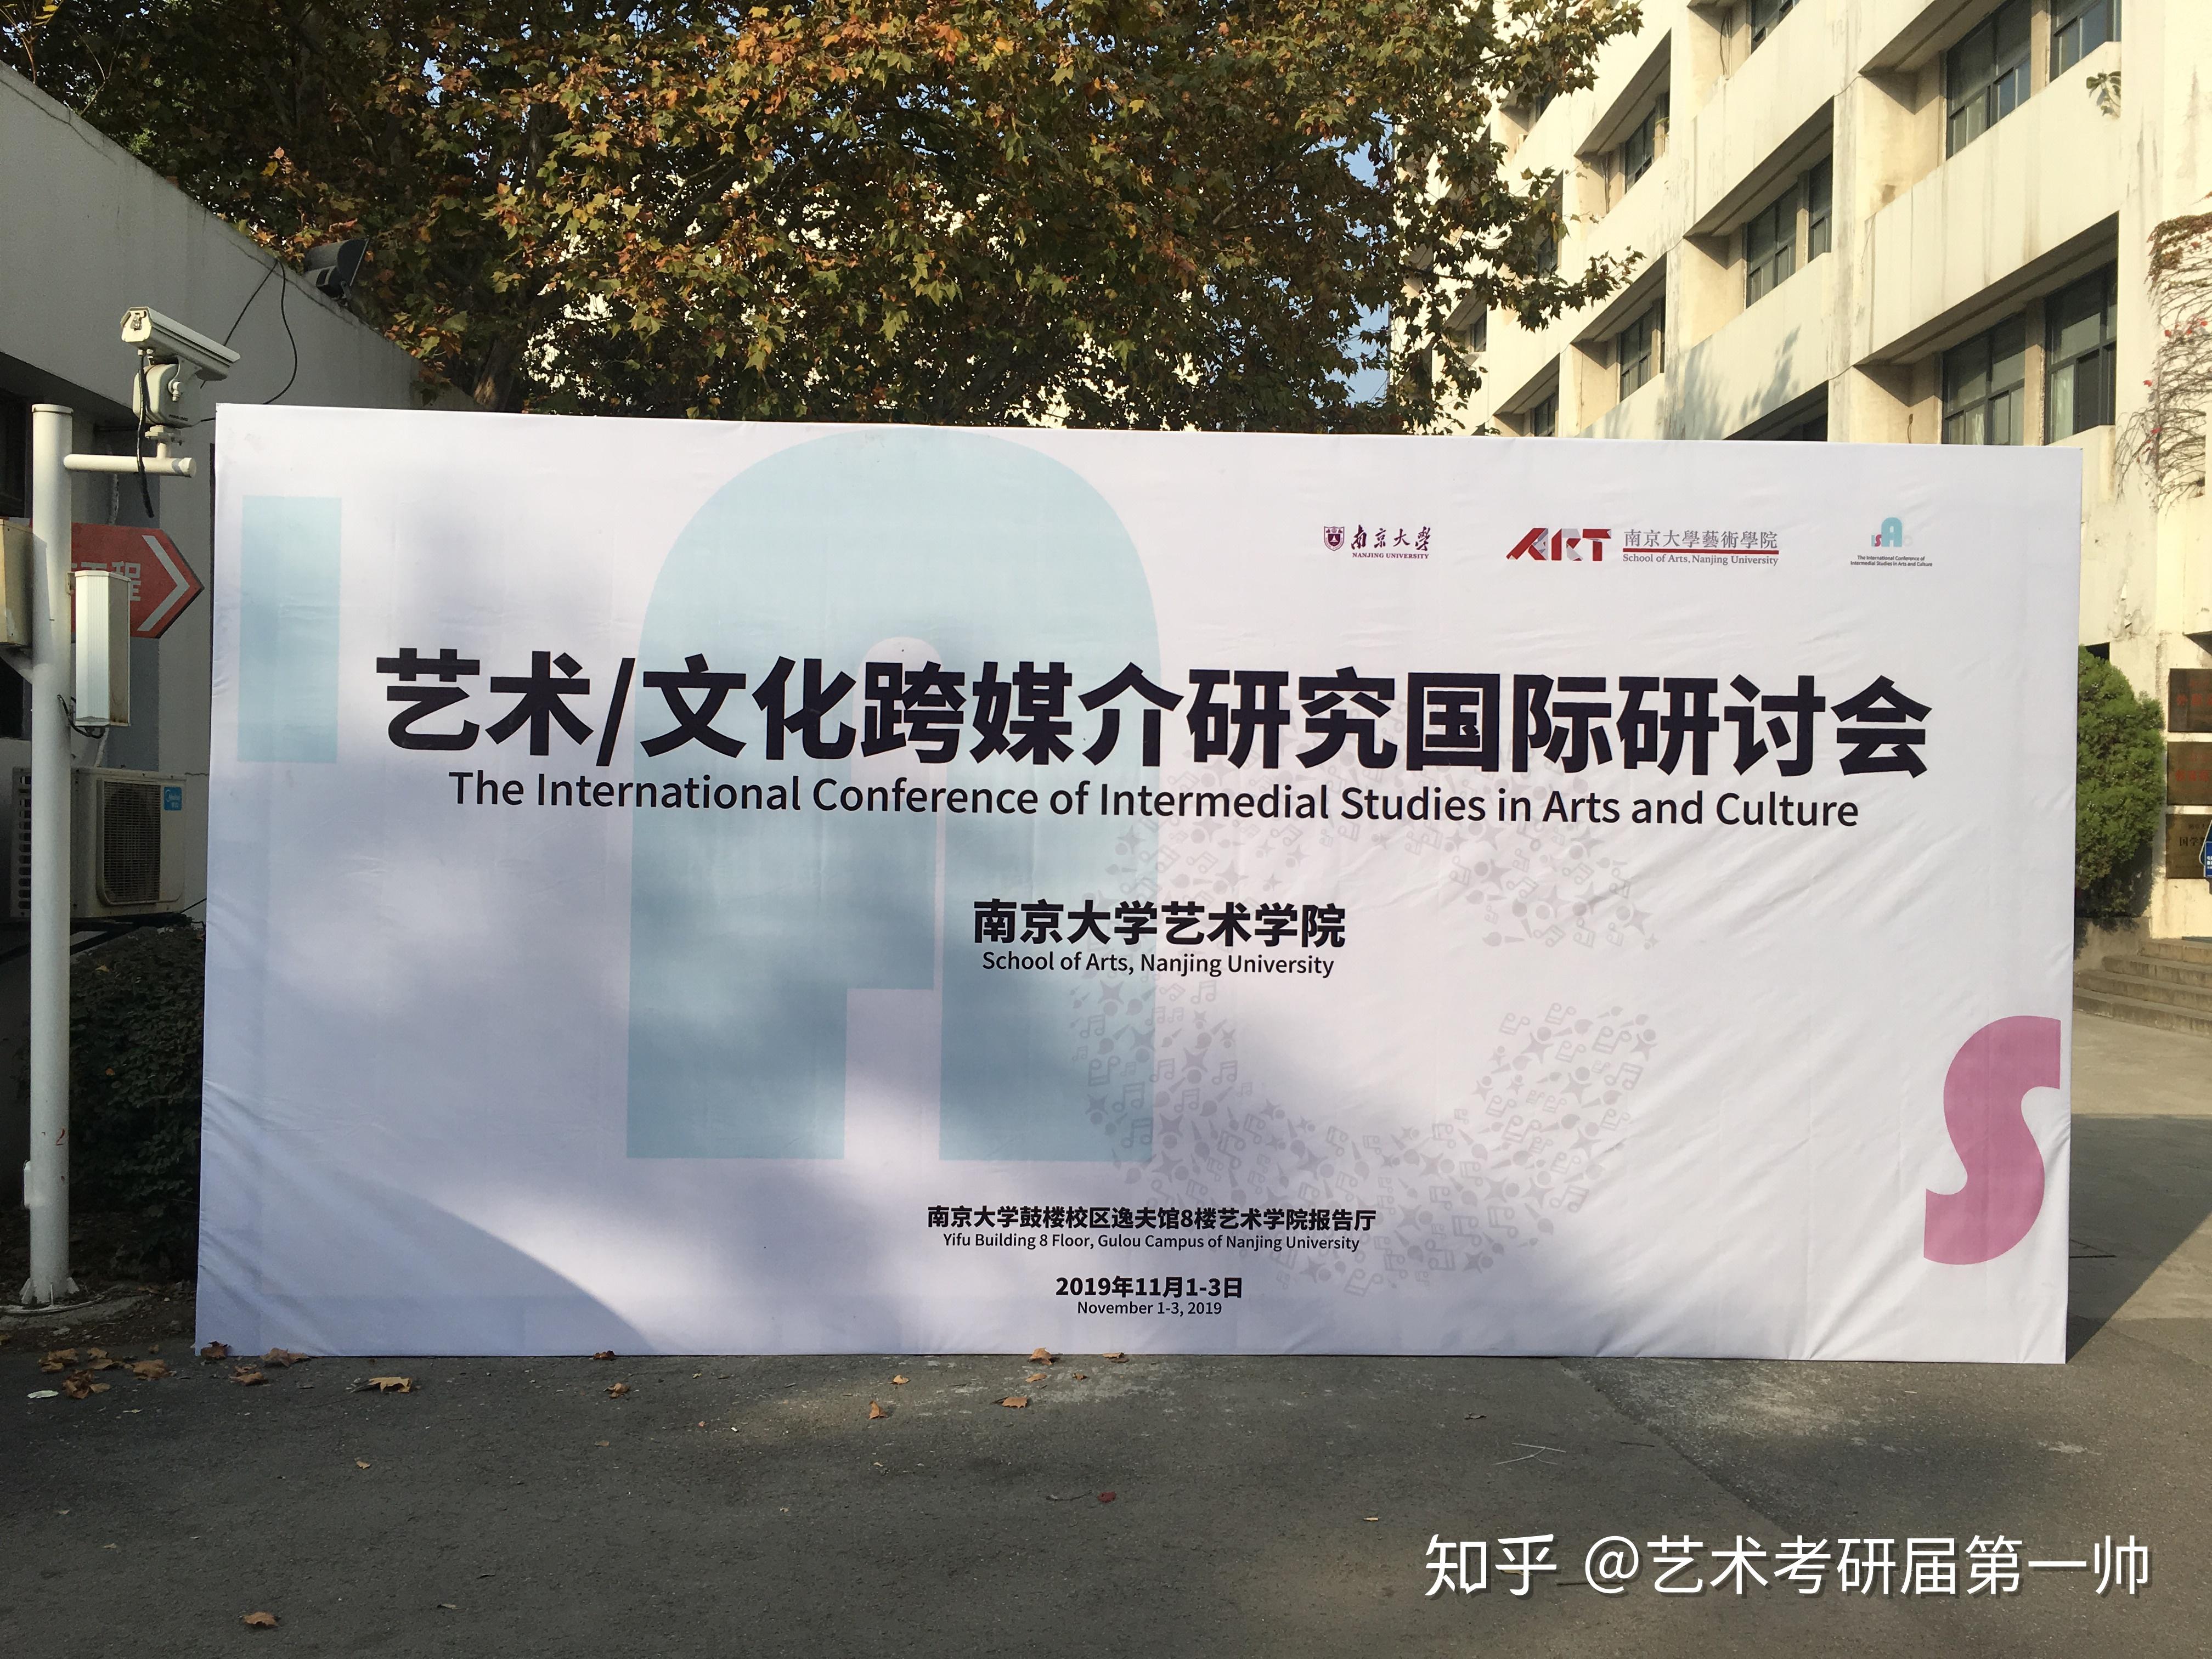 参加了南京大学艺术学院举办的《艺术